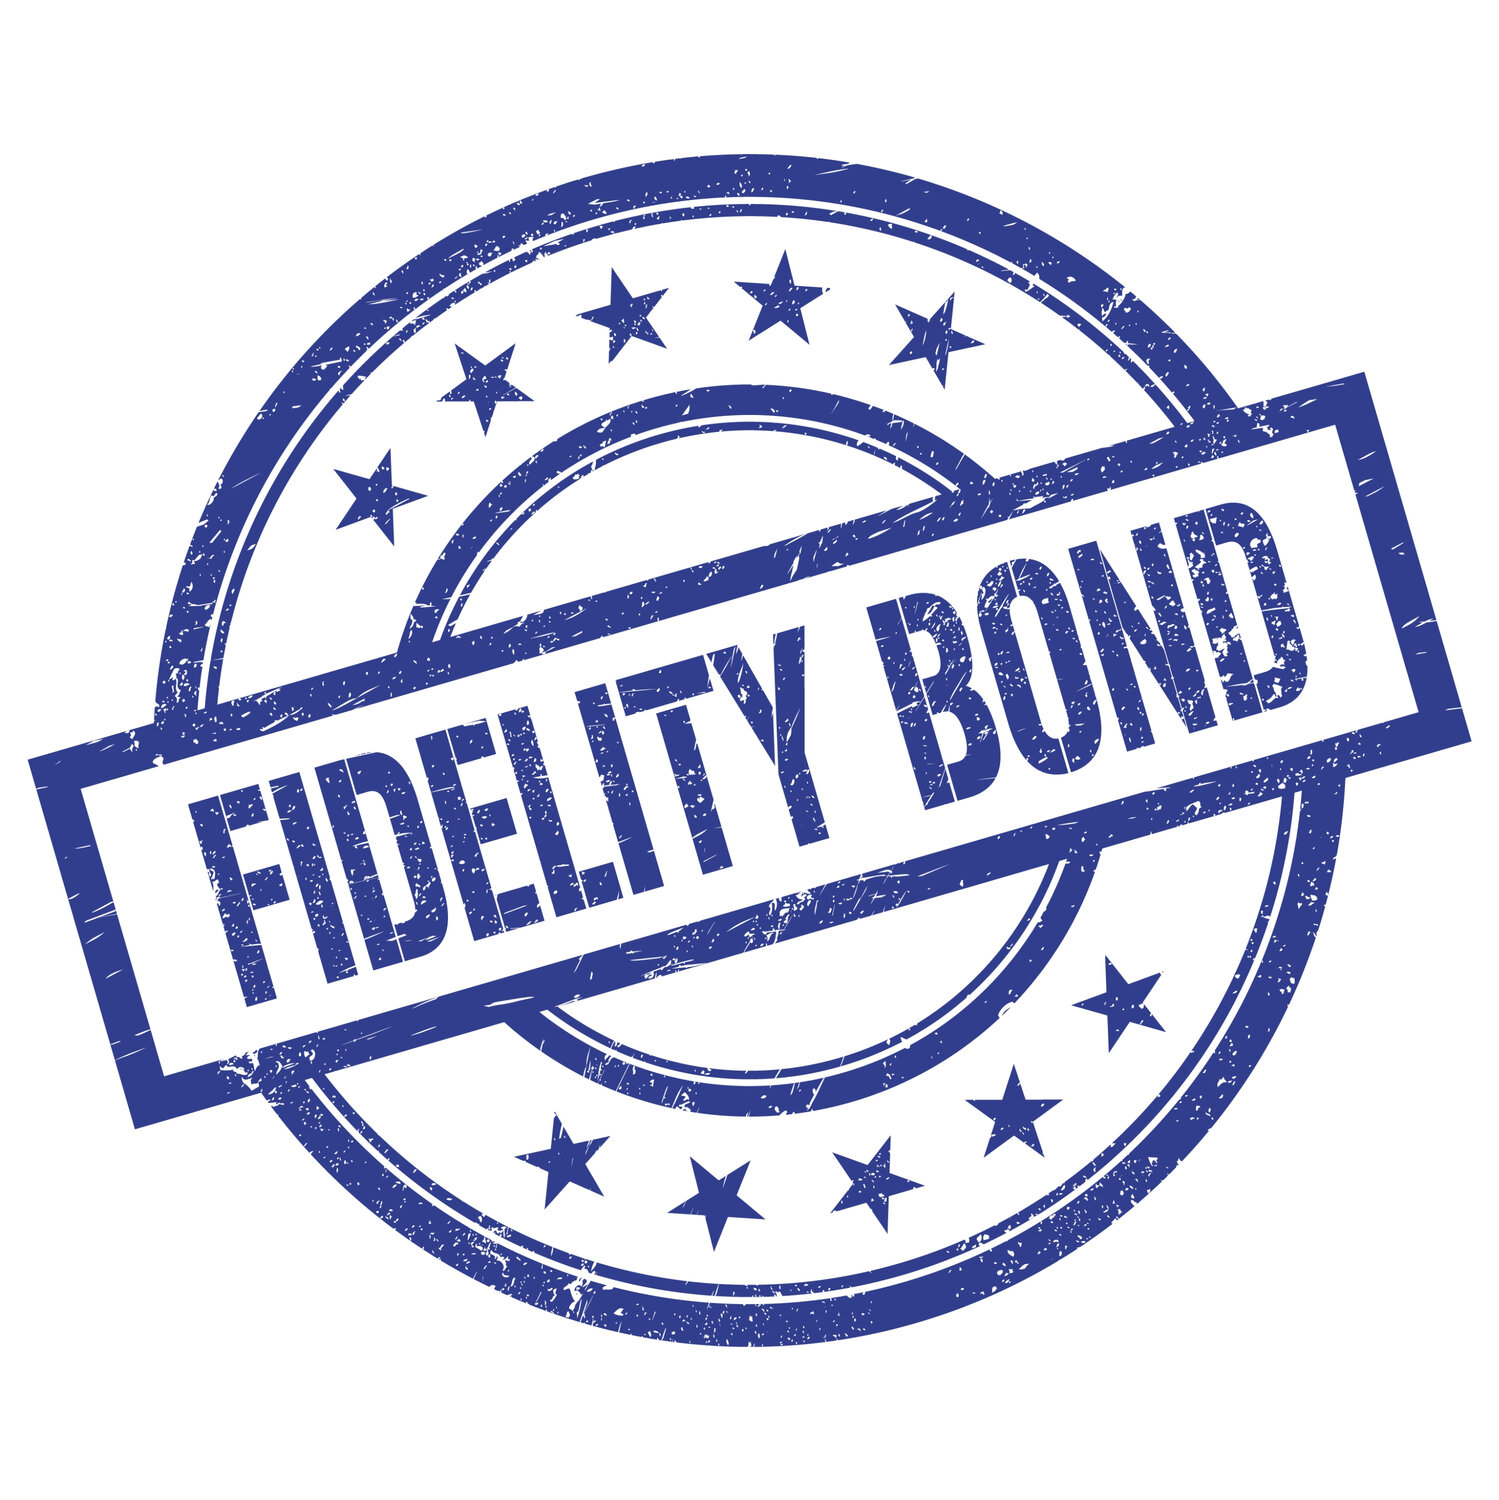 fidelity bond for retirement plans